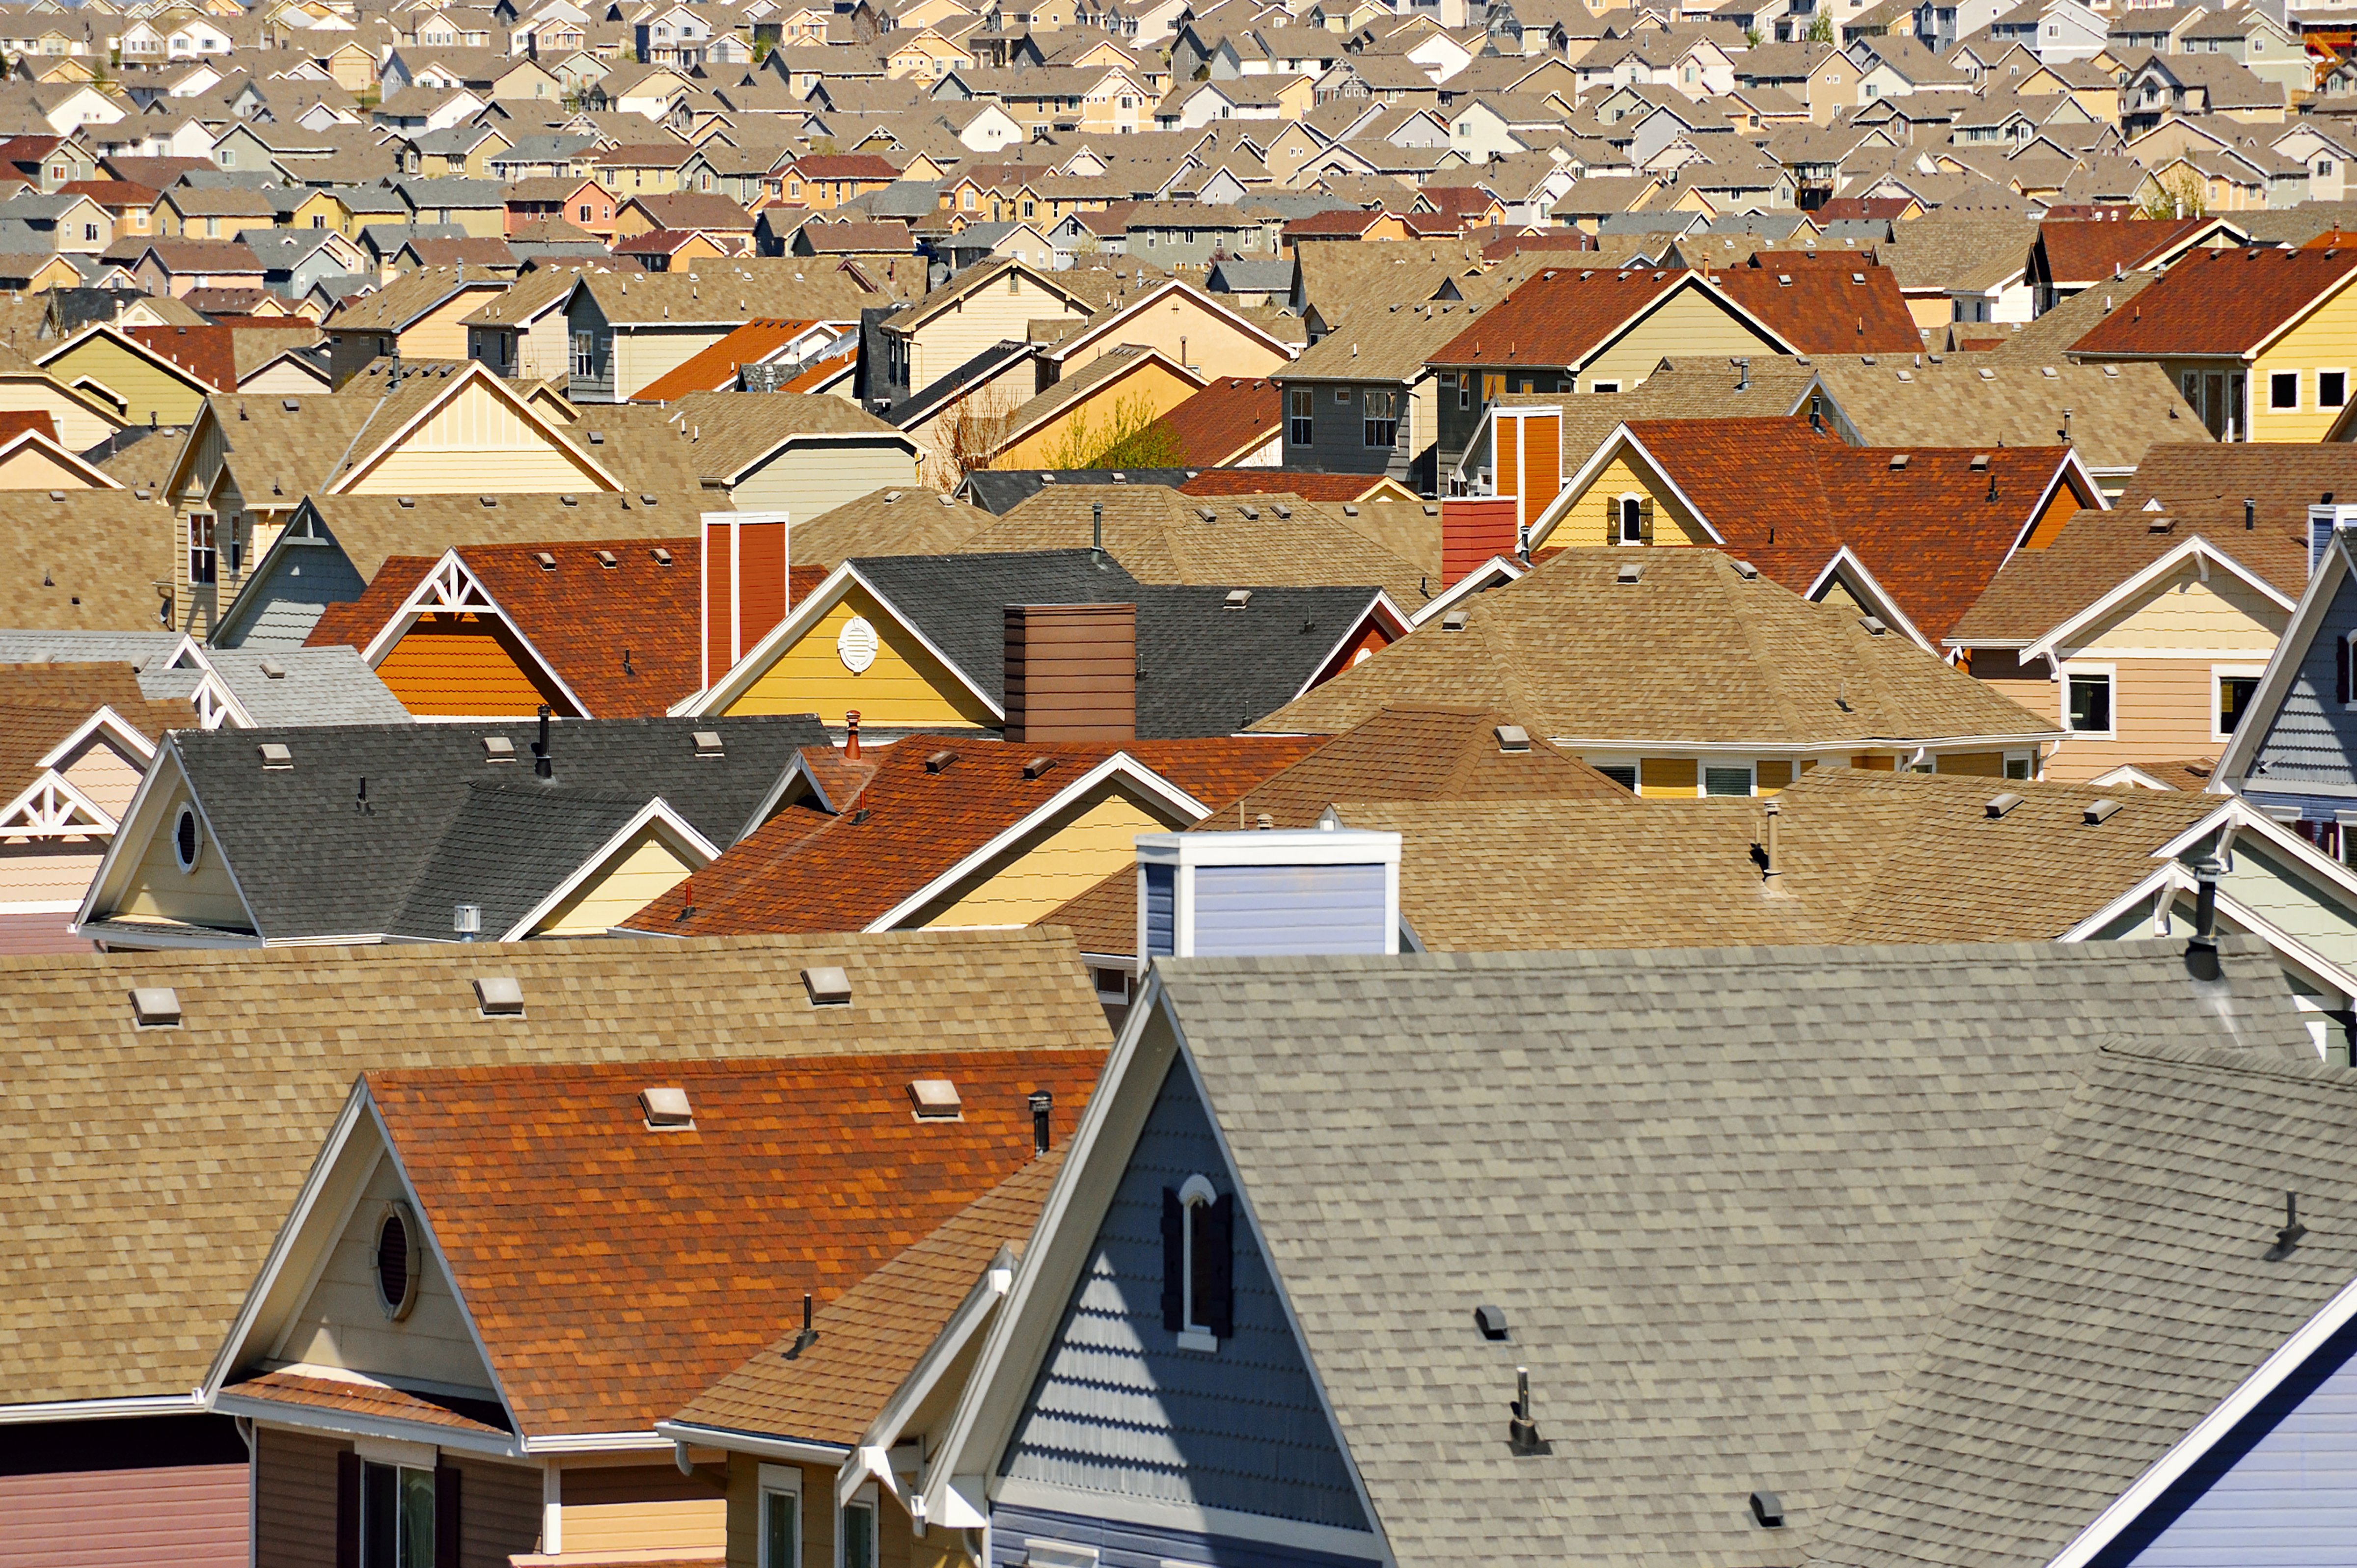 Rooftops in suburban development  in Colorado Springs, Colorado.